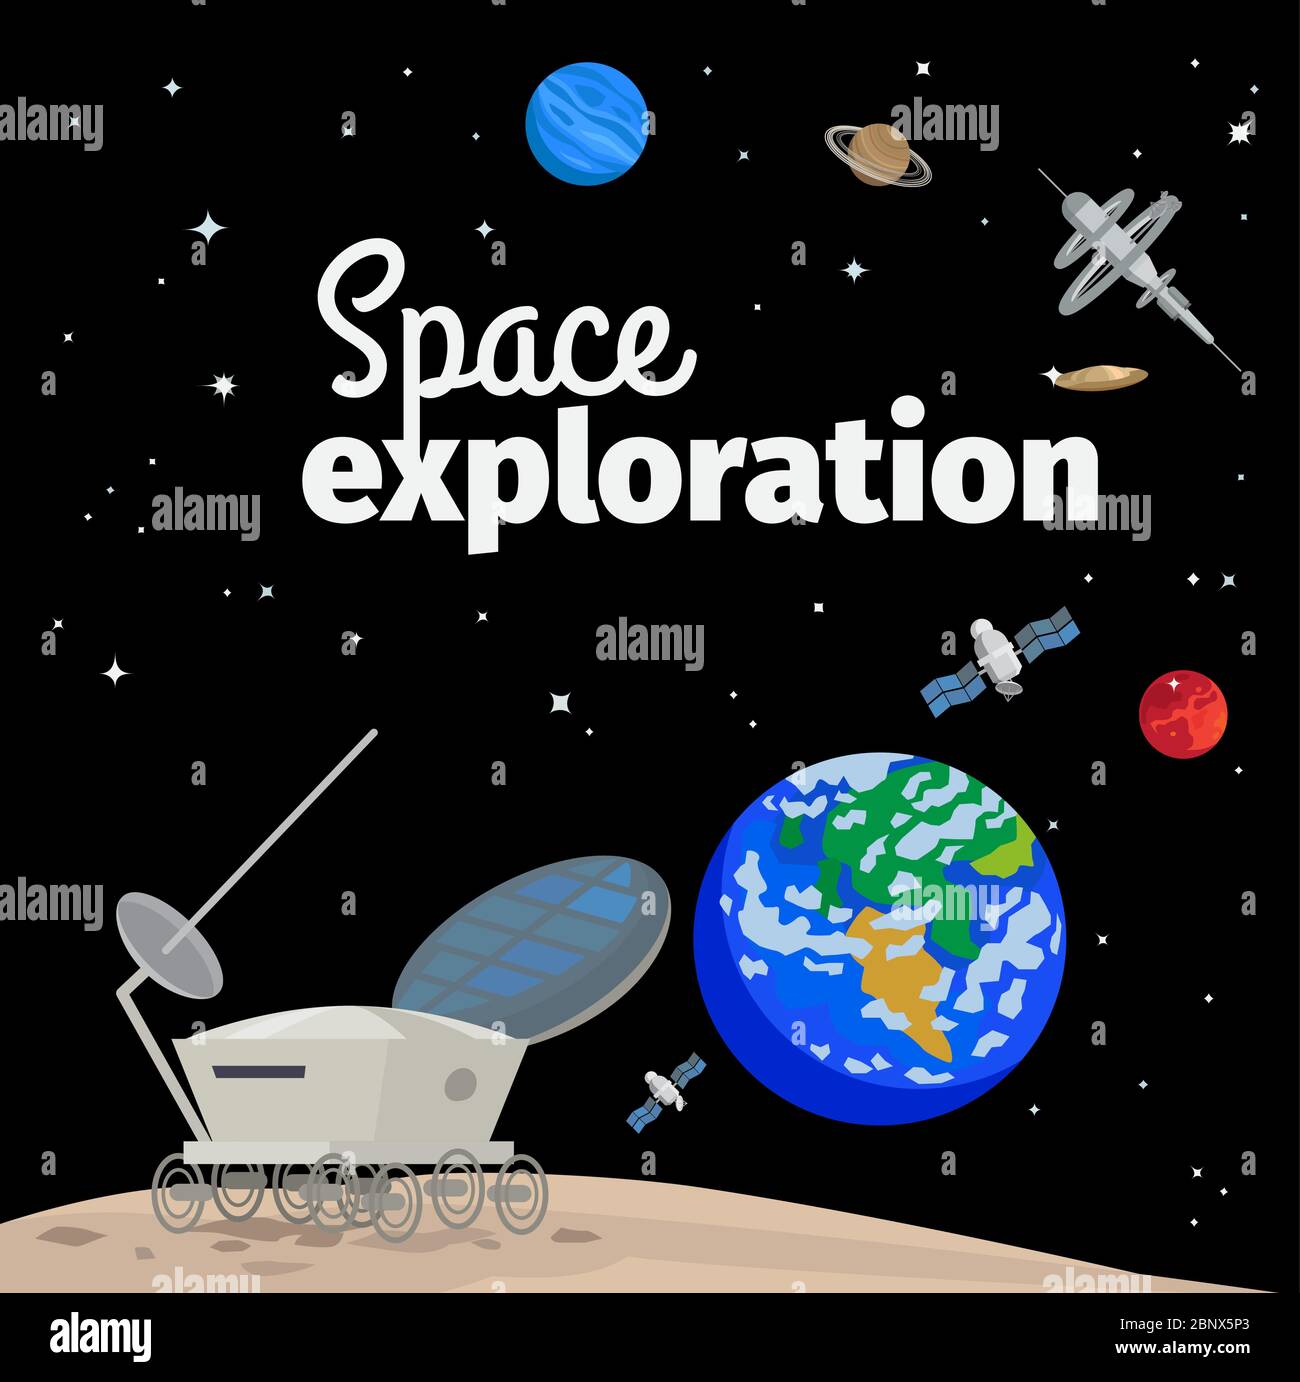 Weltraumforschung Illustration mit Weltraum, Erde und Satelliten. Vektorgrafik Stock Vektor